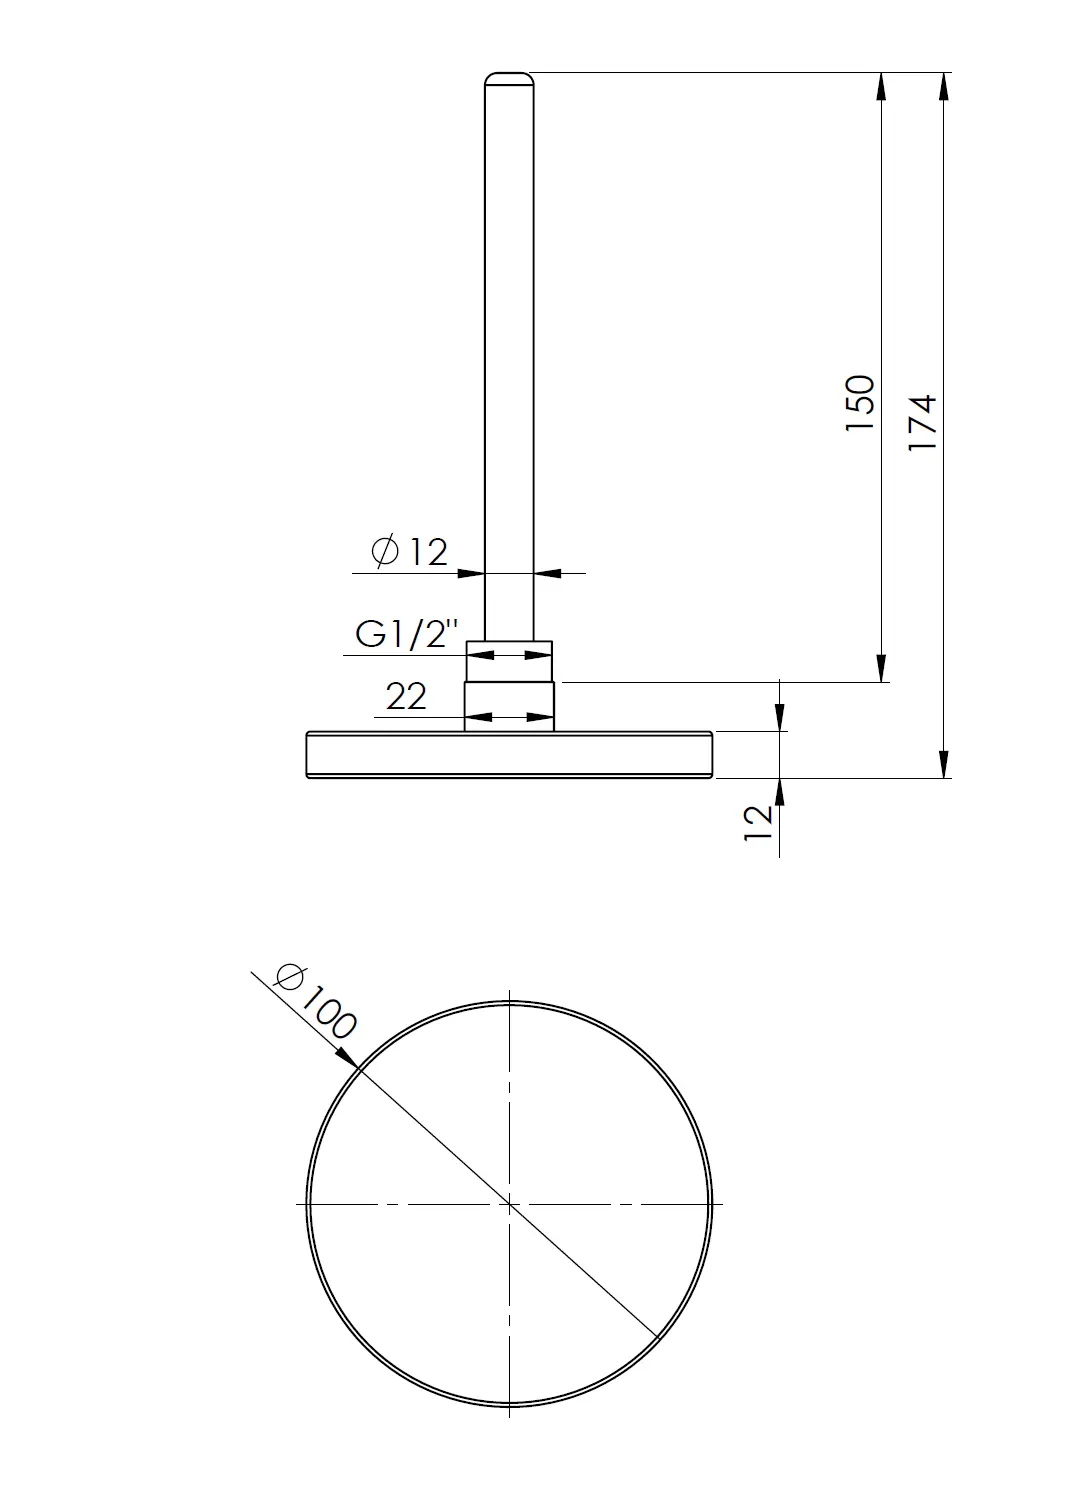 Termometr bimetaliczny BiTh 100, fi100 mm, 0÷160°C, L 150 mm, G1/2", ax, kl. 2 - budowa